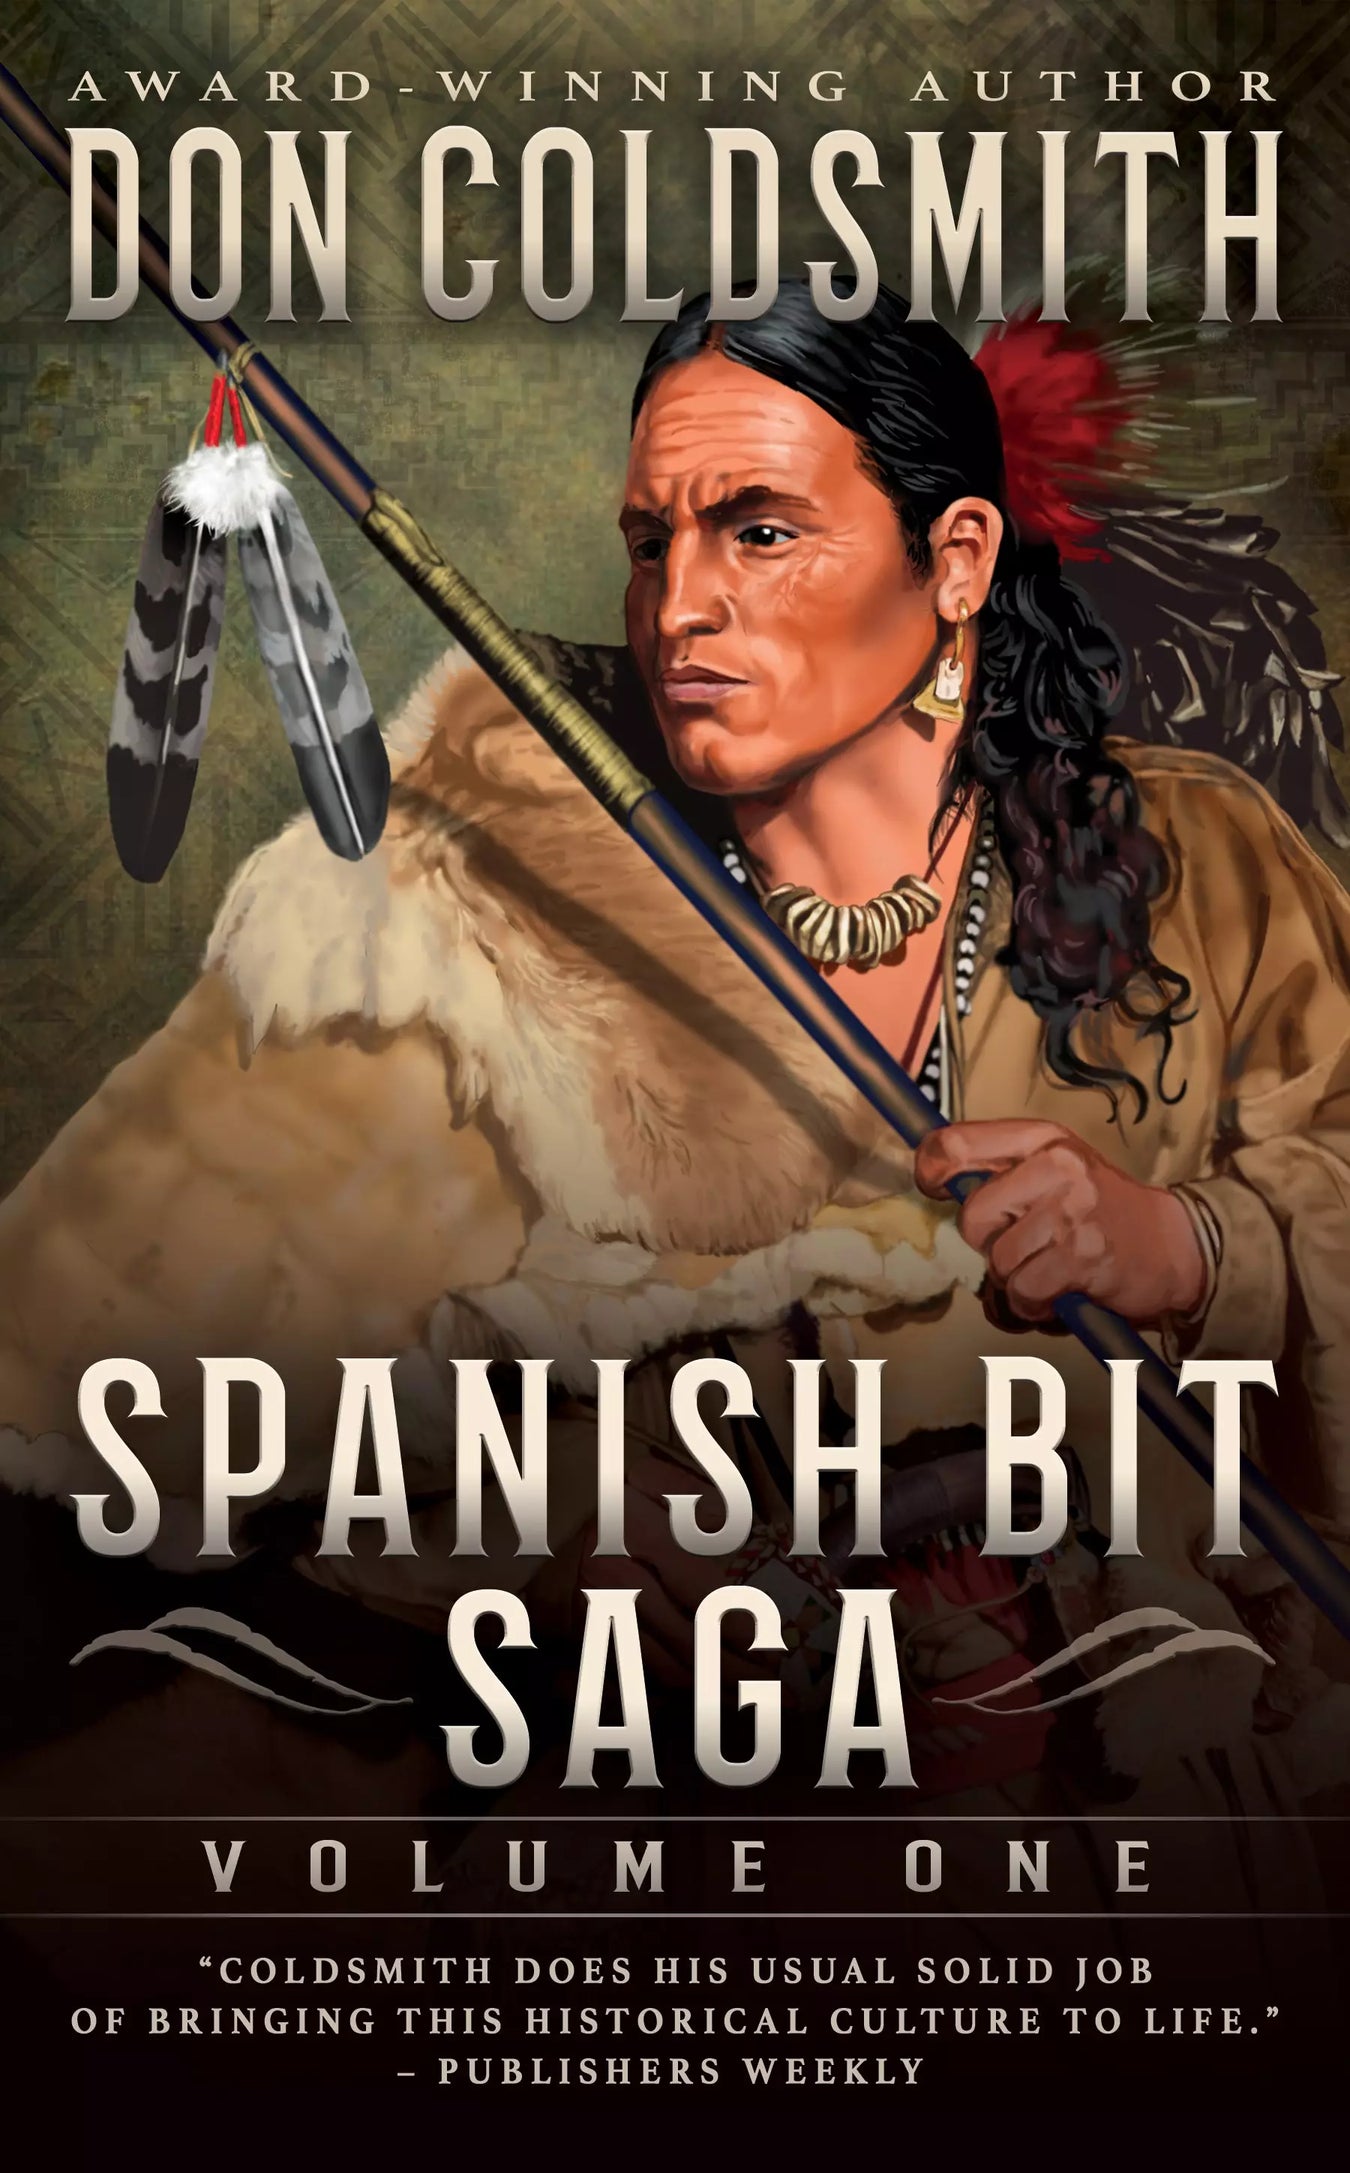 Spanish Bit Saga